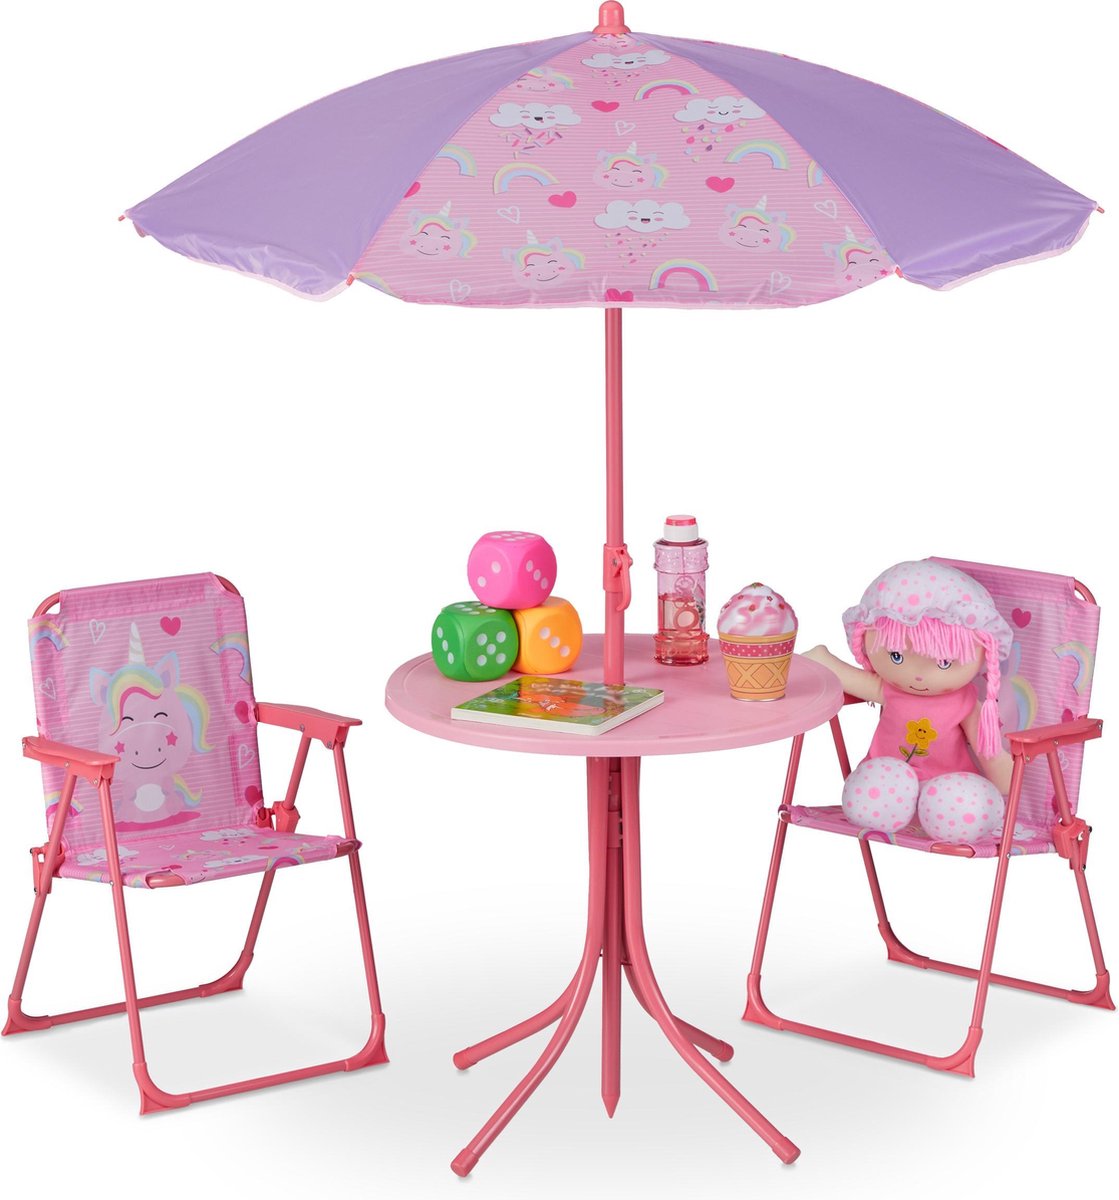 Relaxdays tuinset kinderen kindertuinstoel kindertafel parasol campingstoel kind Unicorn